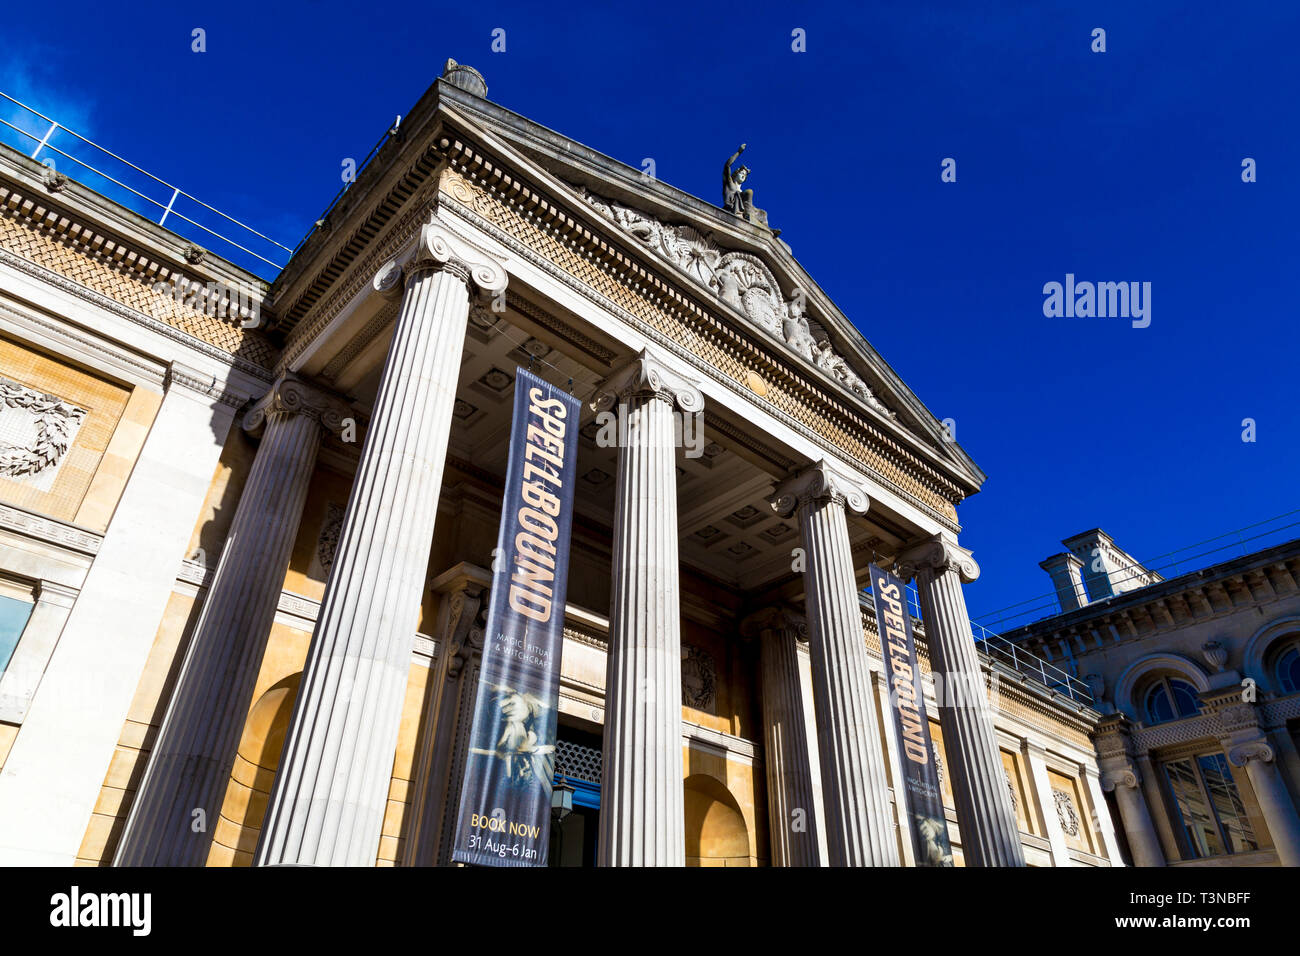 Façade de style classique de l'Ashmolean Museum d'art et d'archéologie à Oxford, UK Banque D'Images